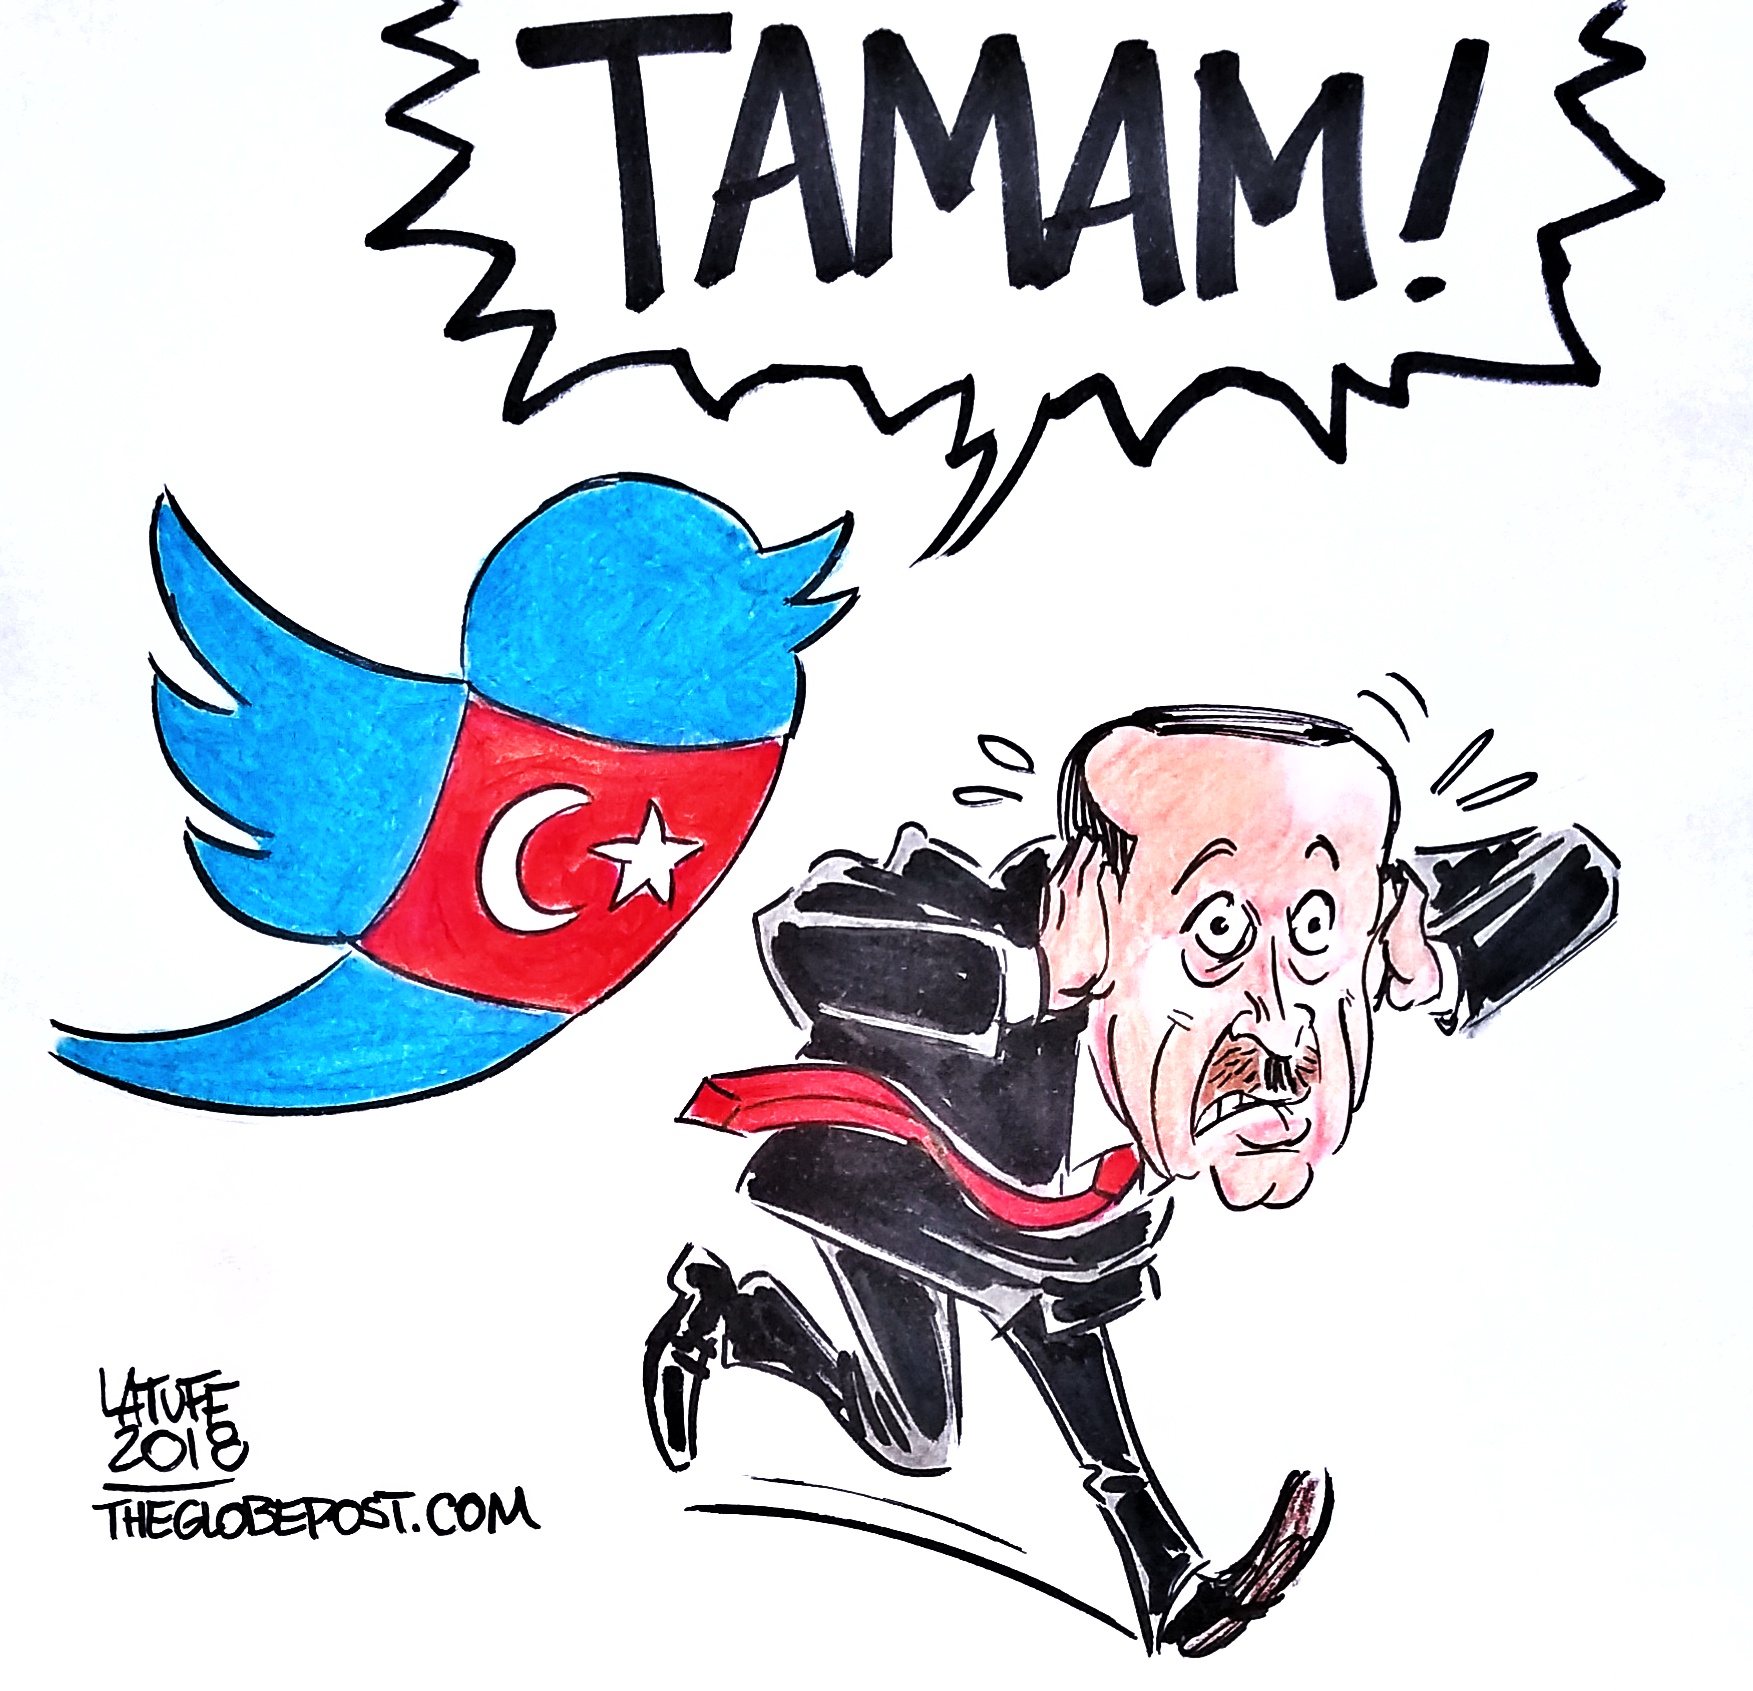 Turkish people say TAMAM, Enough, to Erdogan on Twitter.